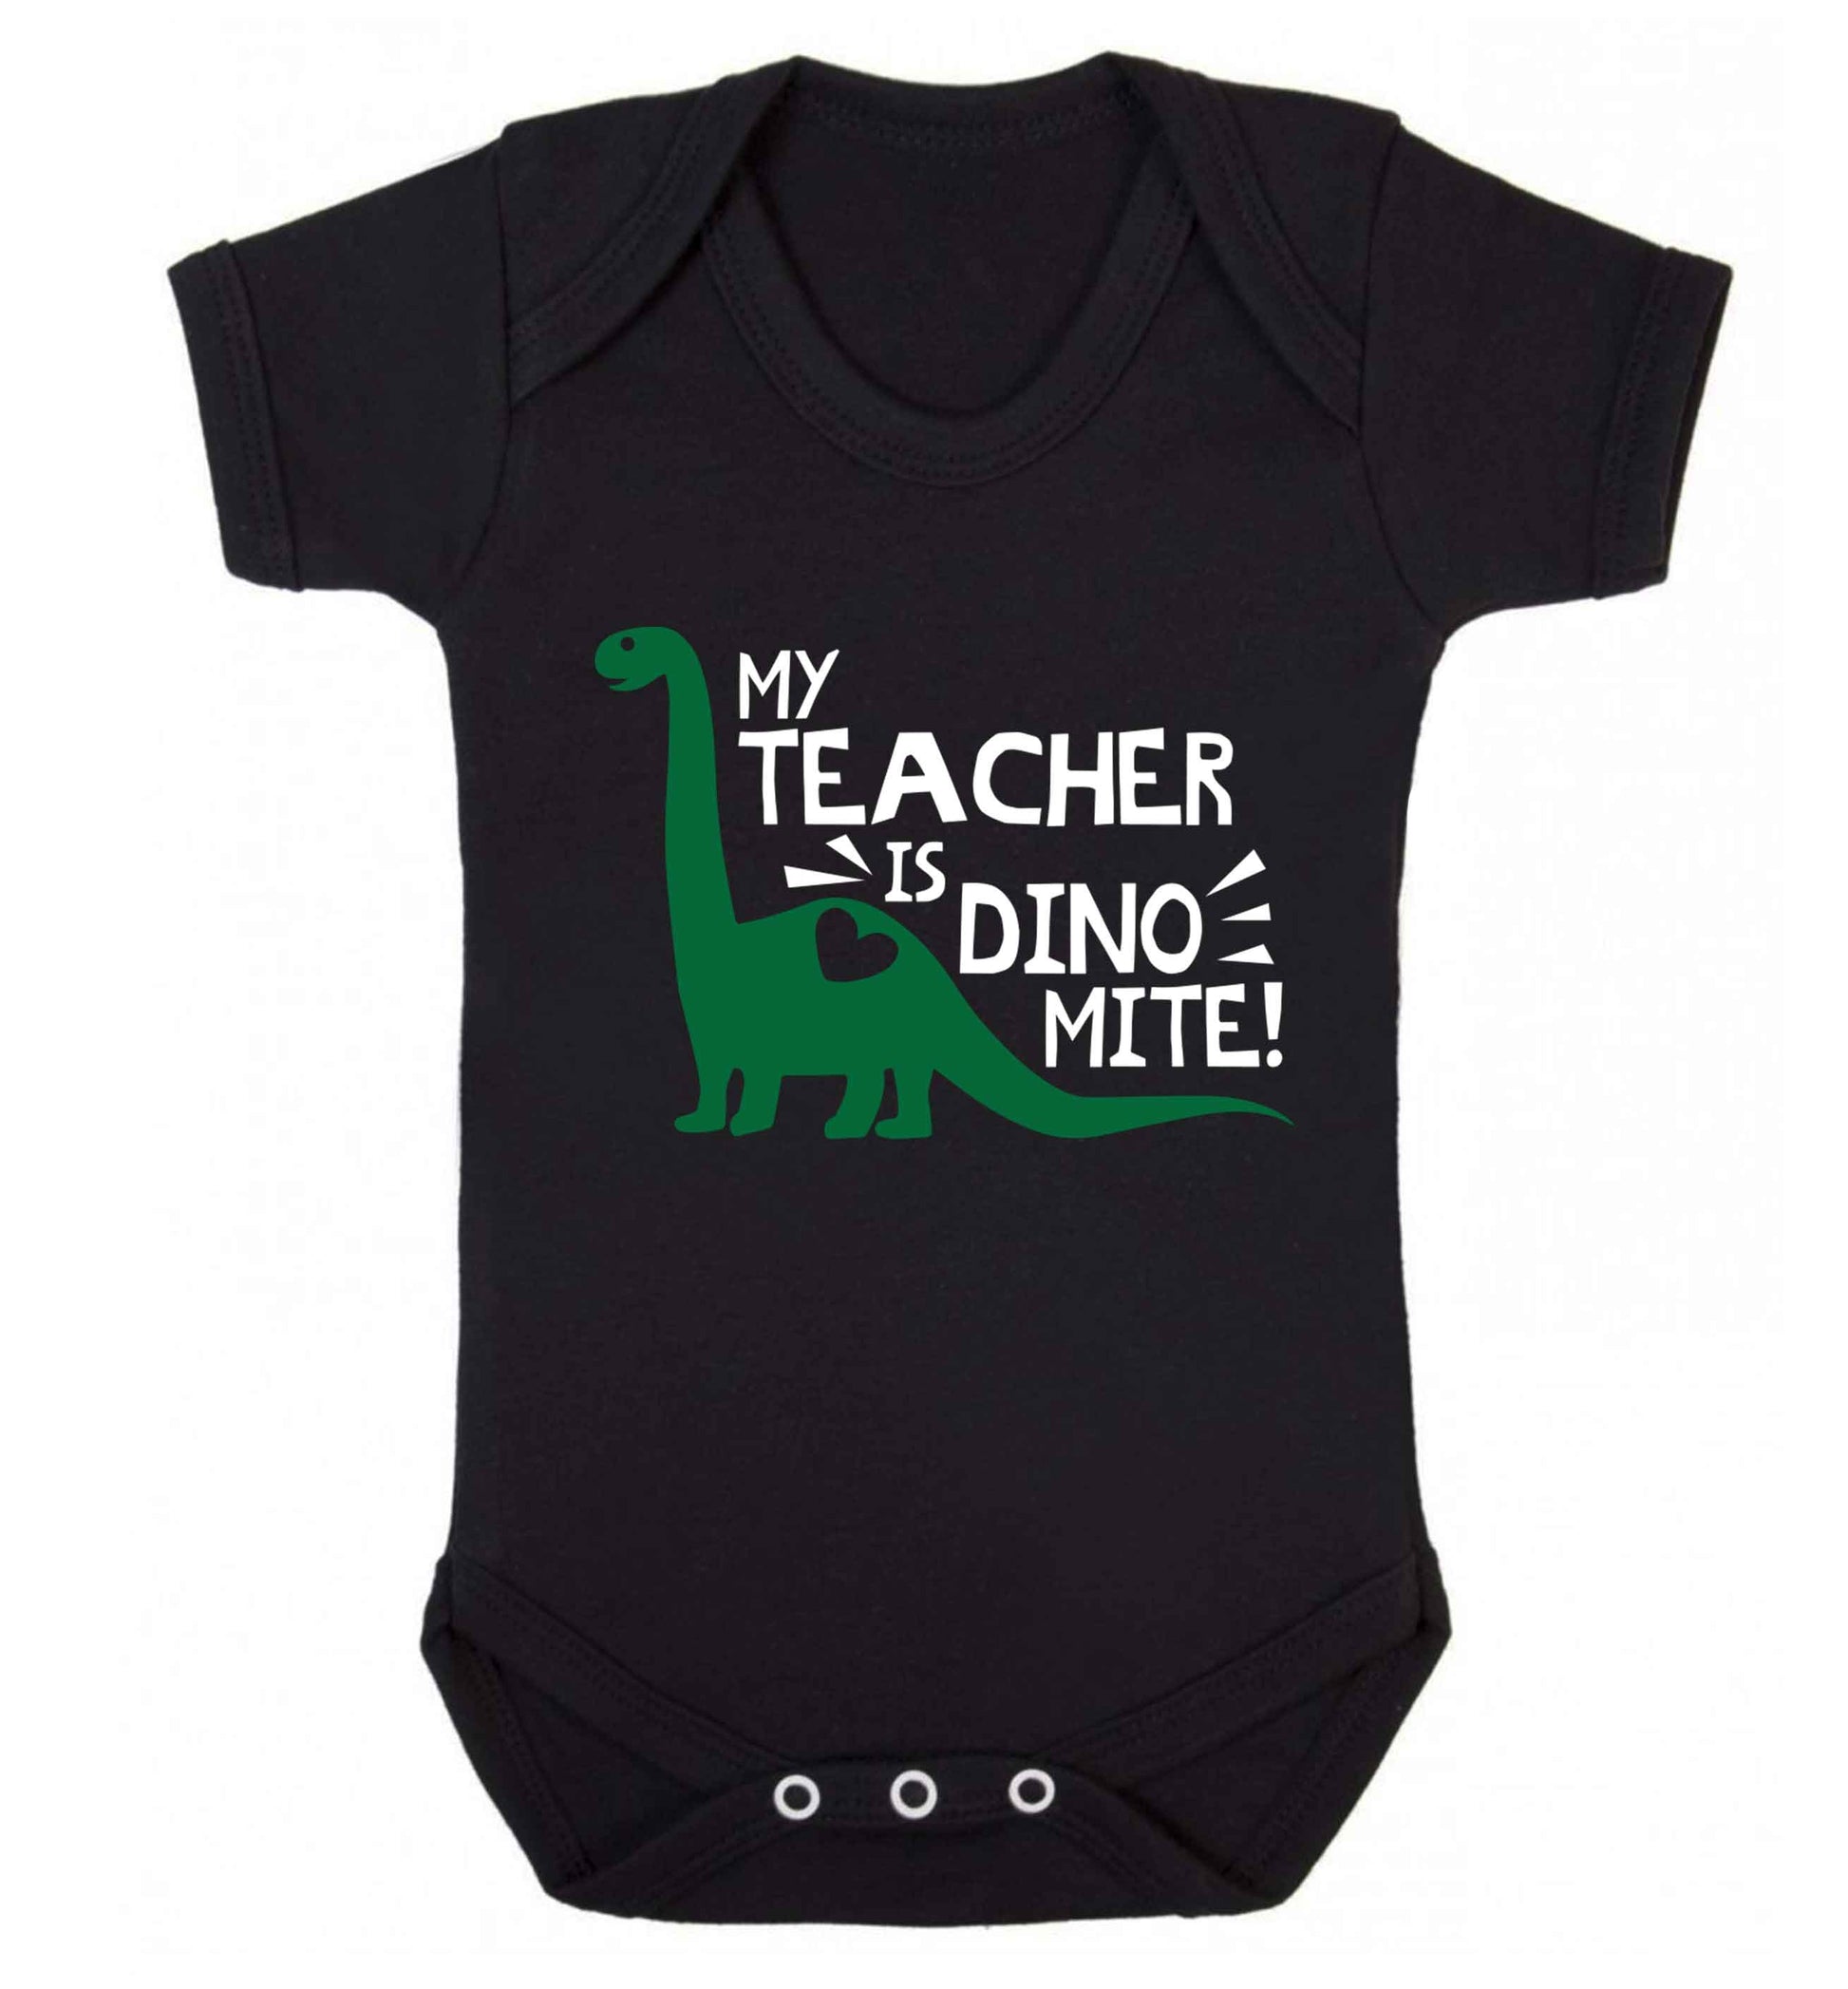 My teacher is dinomite! Baby Vest black 18-24 months